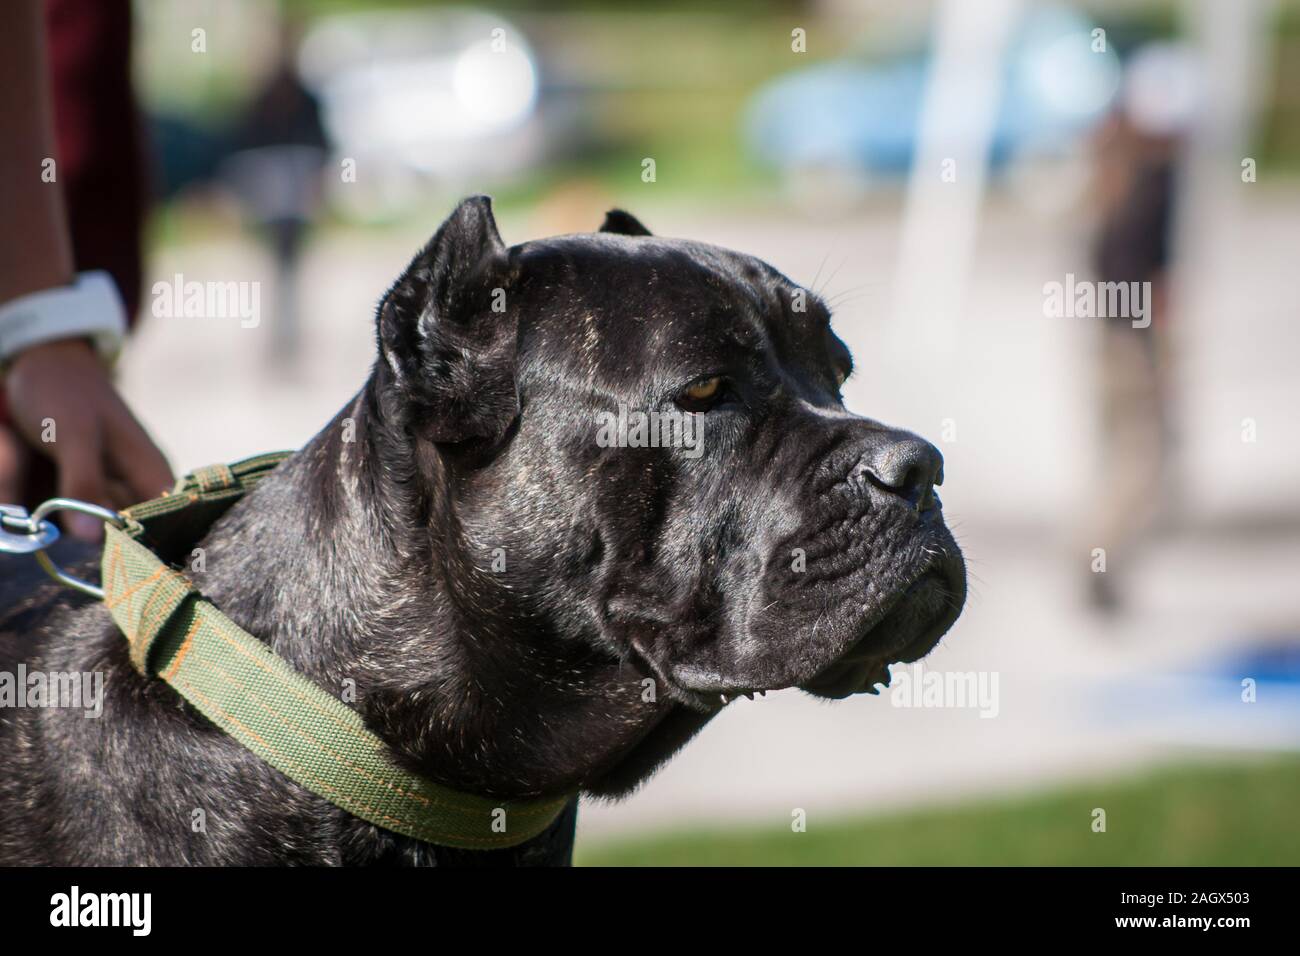 Retrato de un negro atigrado Cane Corso Italiano con orejas recortadas Foto de stock